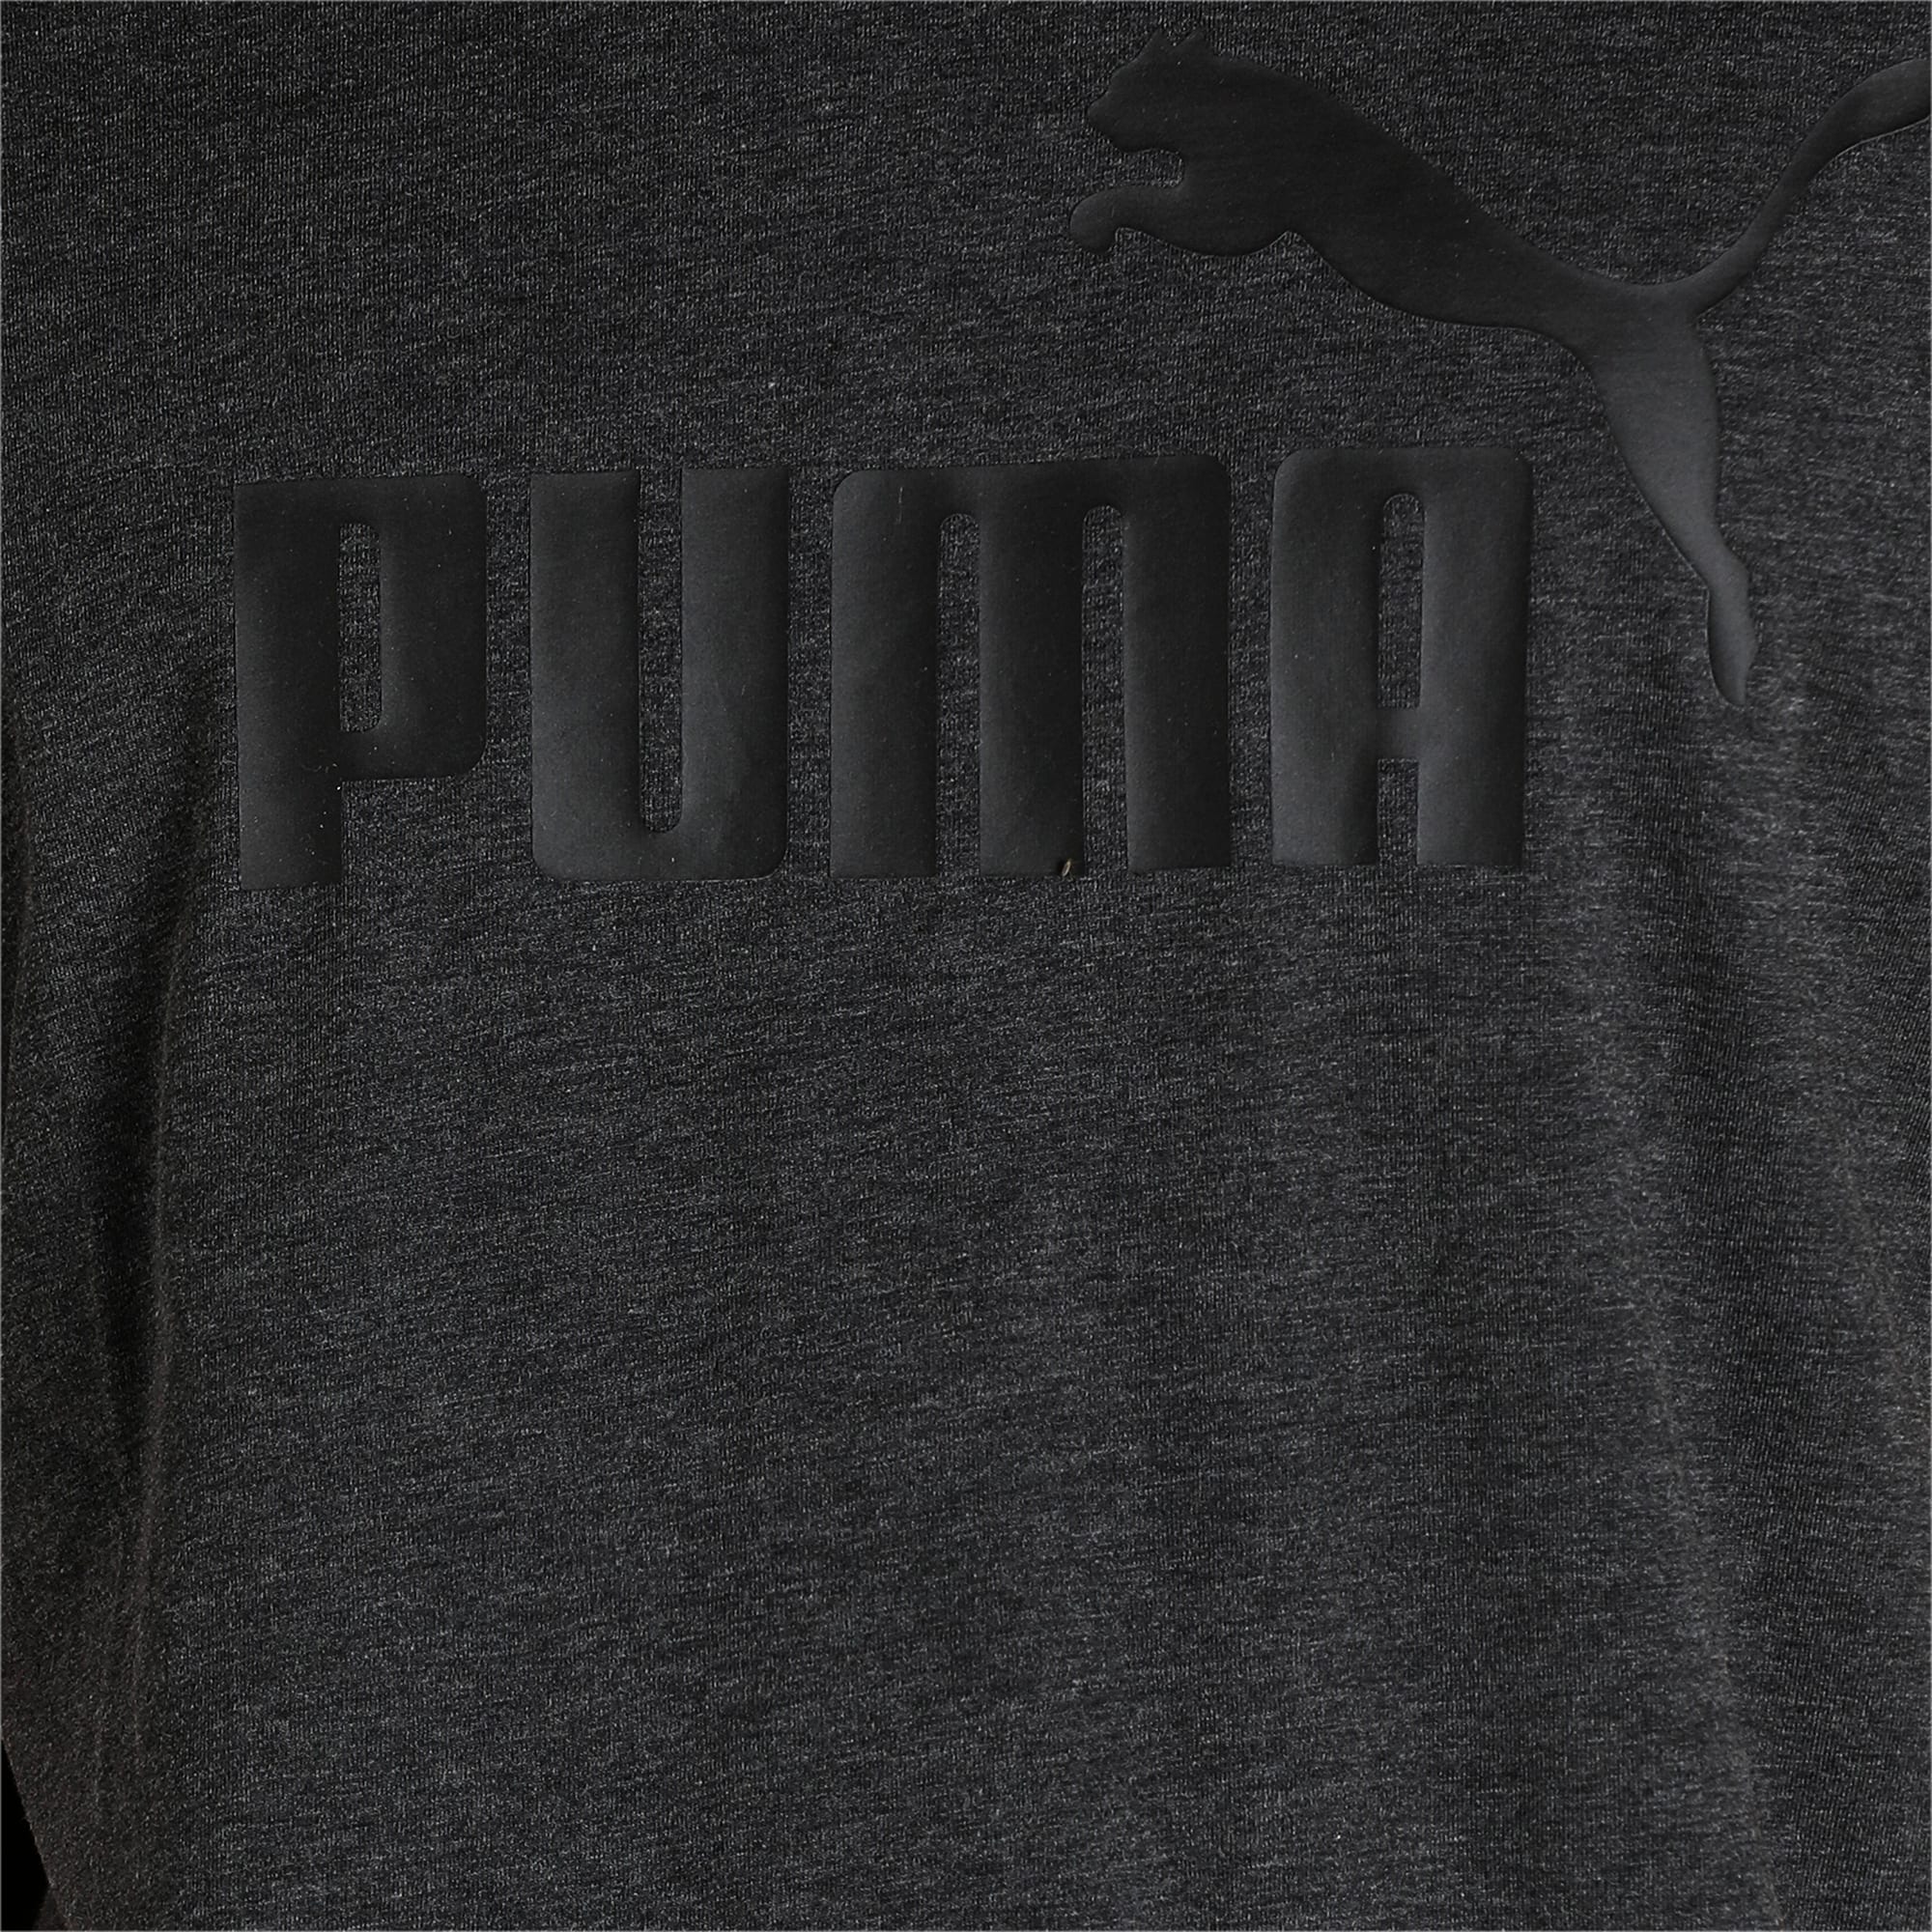 PUMA Essentials Heather Men's T-Shirt, Dark Grey Heather, Size L, Clothing